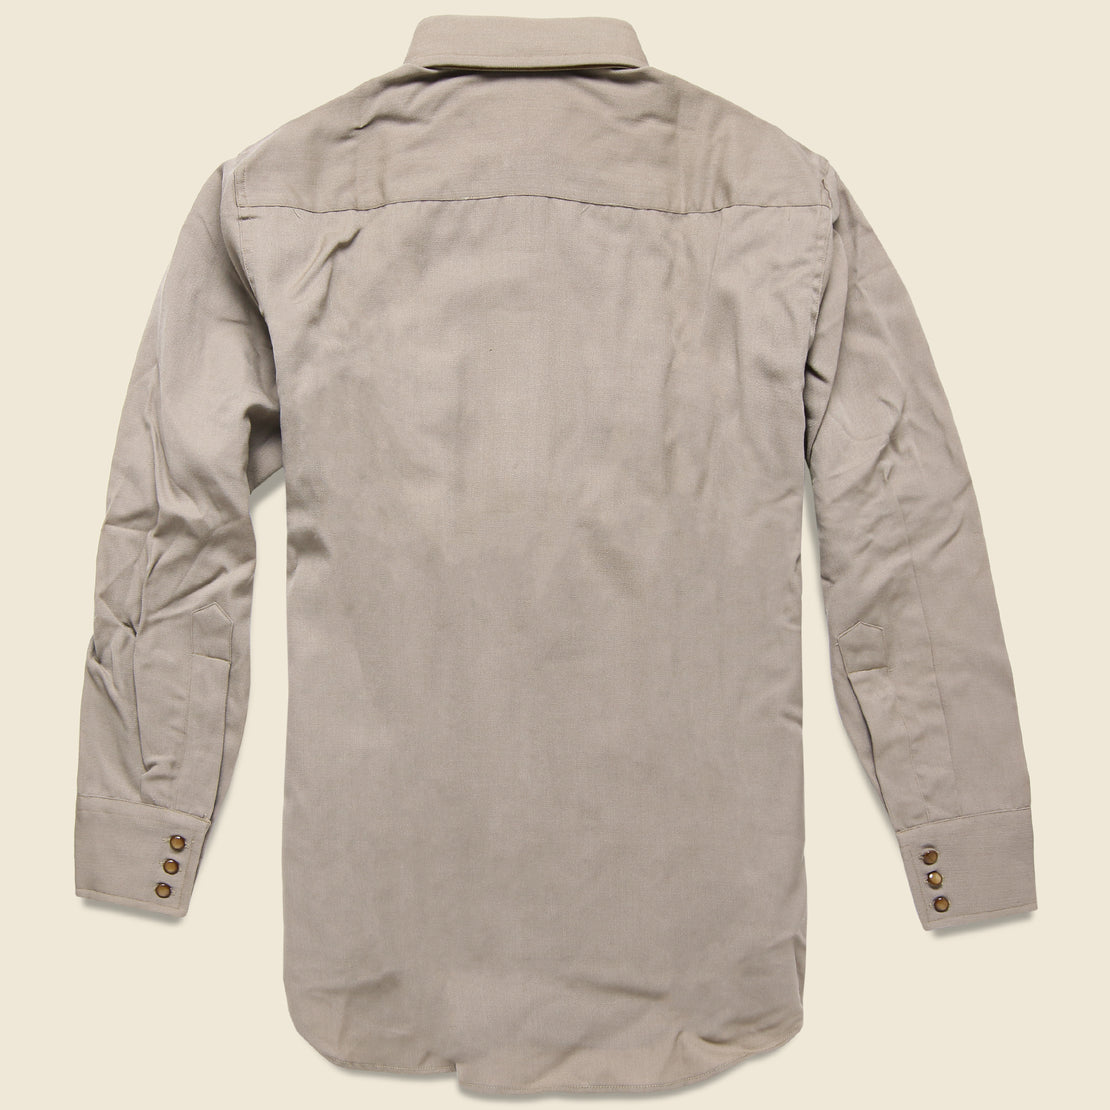 Deadstock Western Shirt - Grey